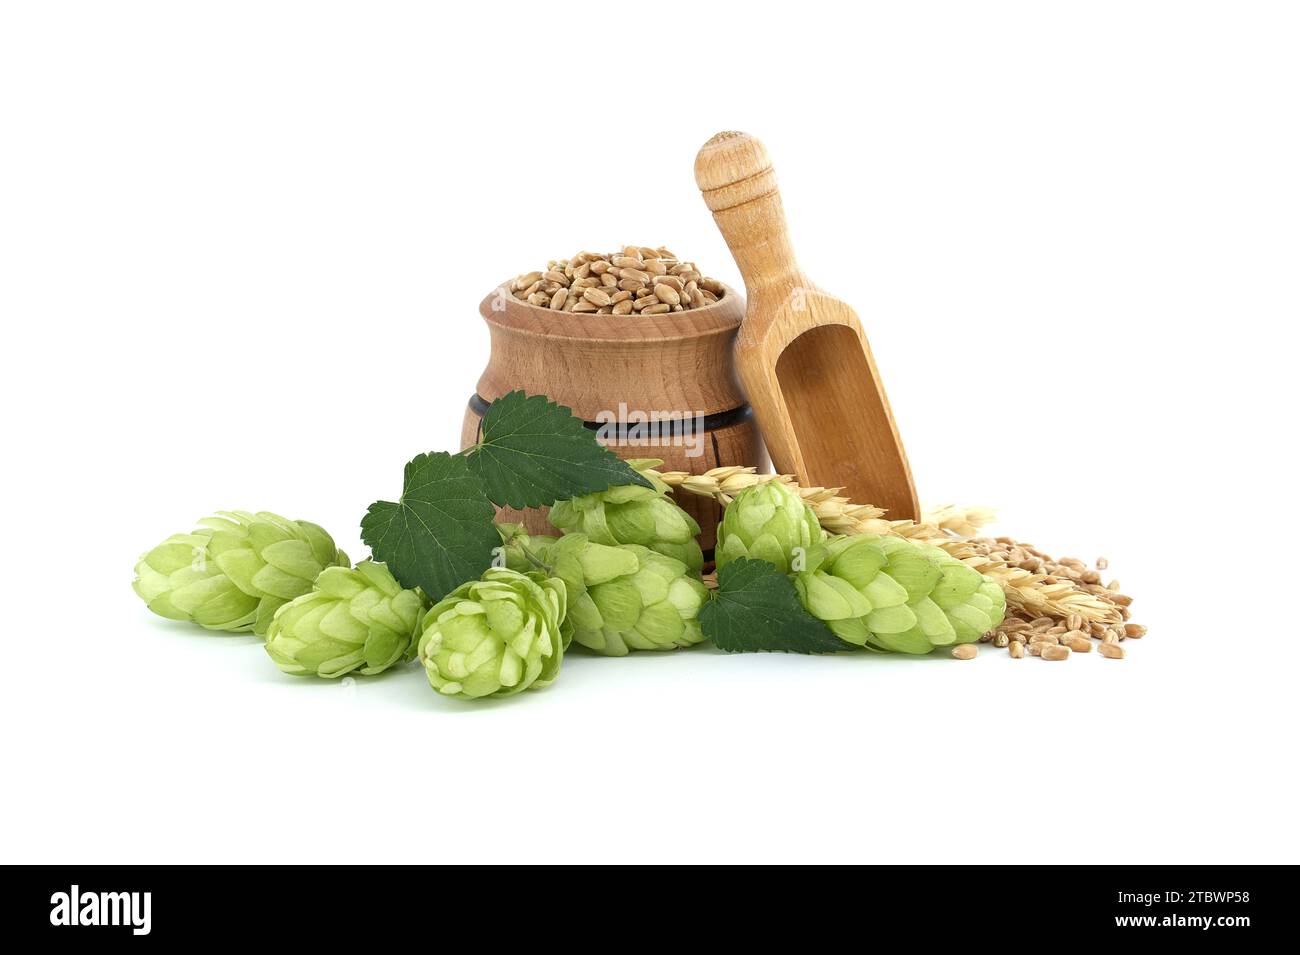 Bière ou boisson encore la vie avec des cônes de houblon vert frais près d'un baril avec grain de blé isolé sur un fond blanc Banque D'Images